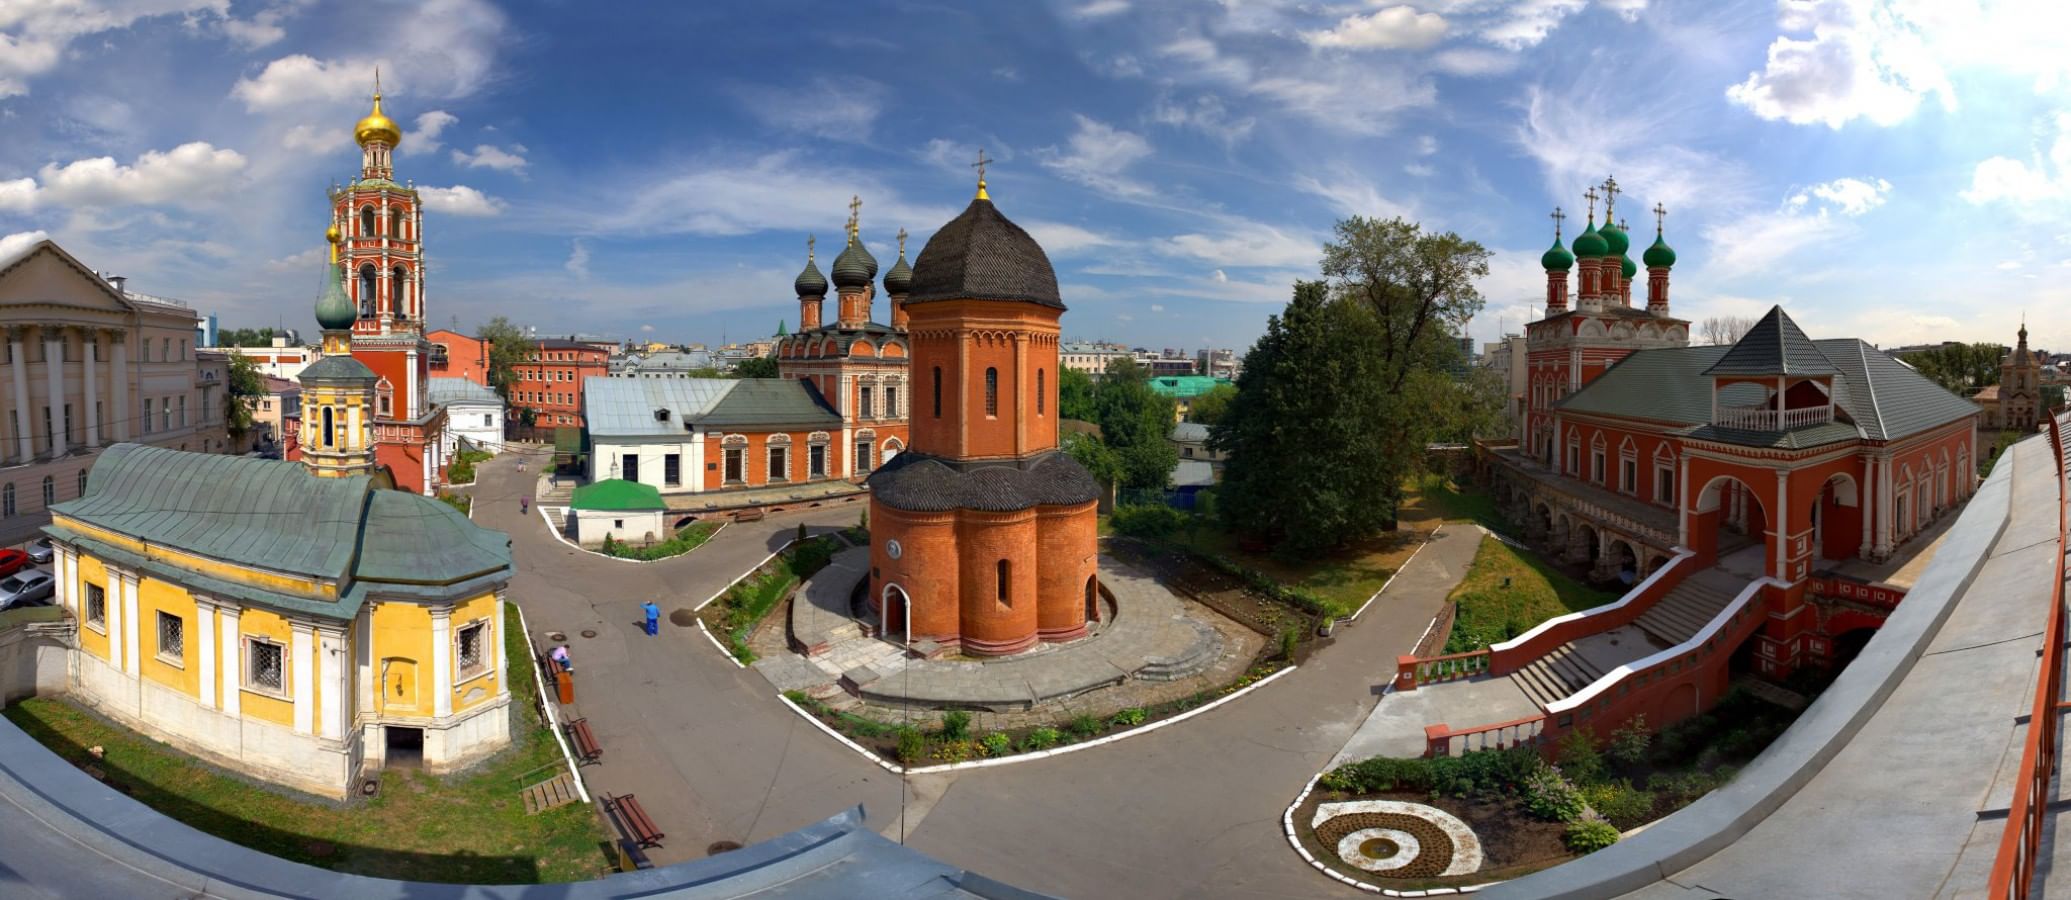 Высокопетровский монастырь в москве фото